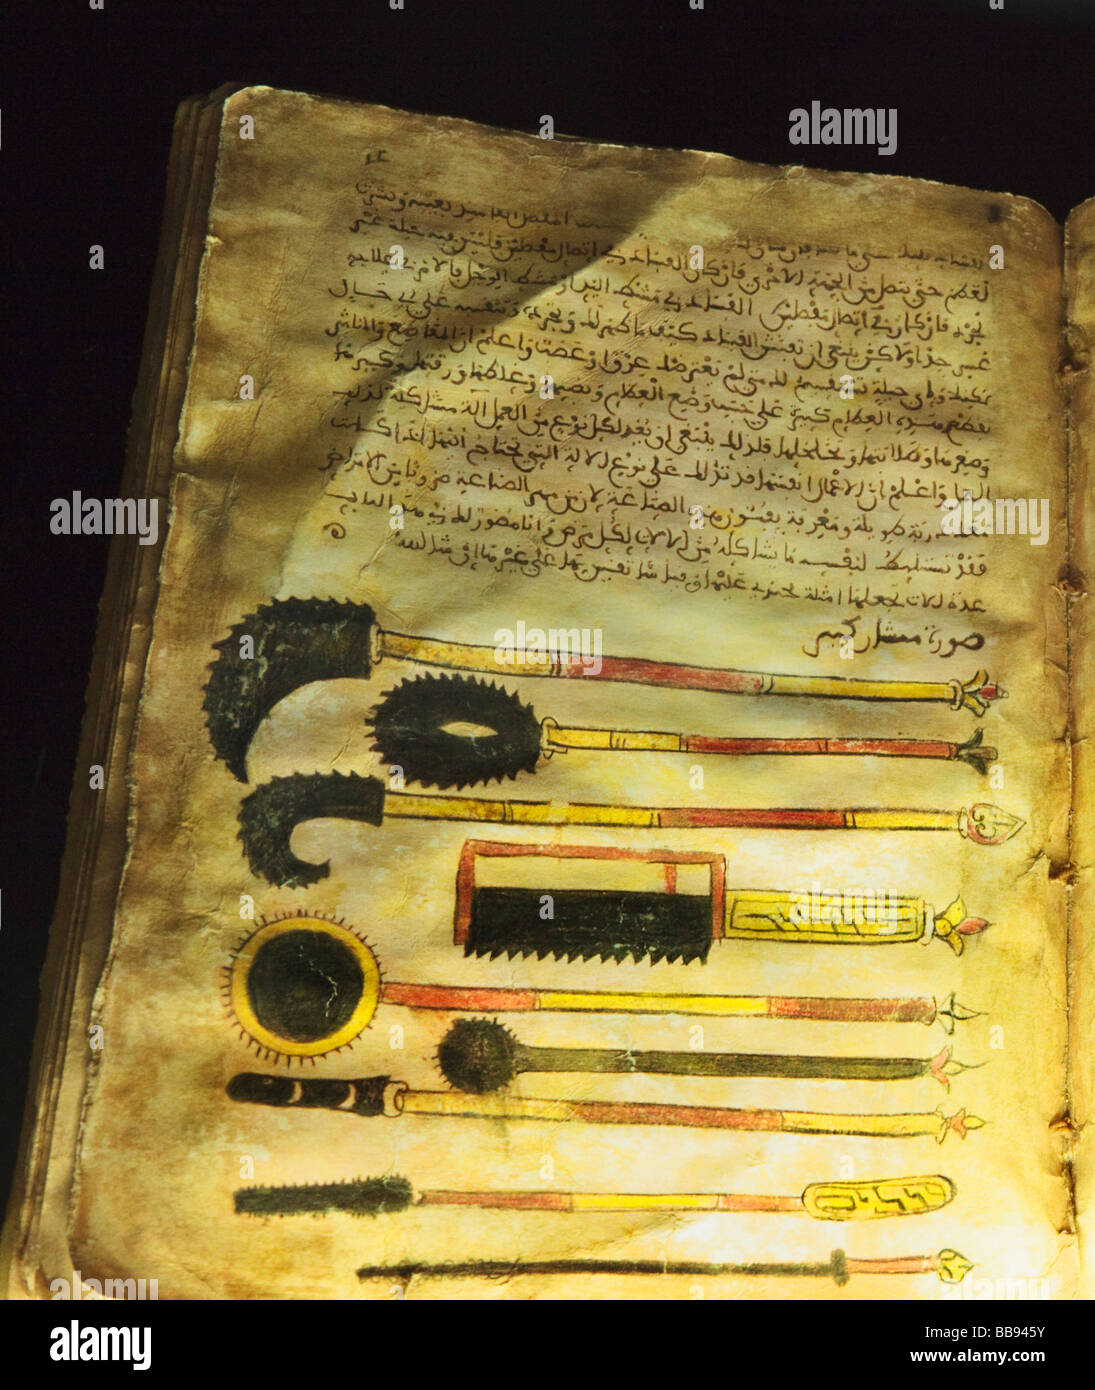 Illustrationen von chirurgischen Instrumenten aus 13. Jahrhundert buchen Abhandlung über Medizin von al-Zahrawi Stockfoto